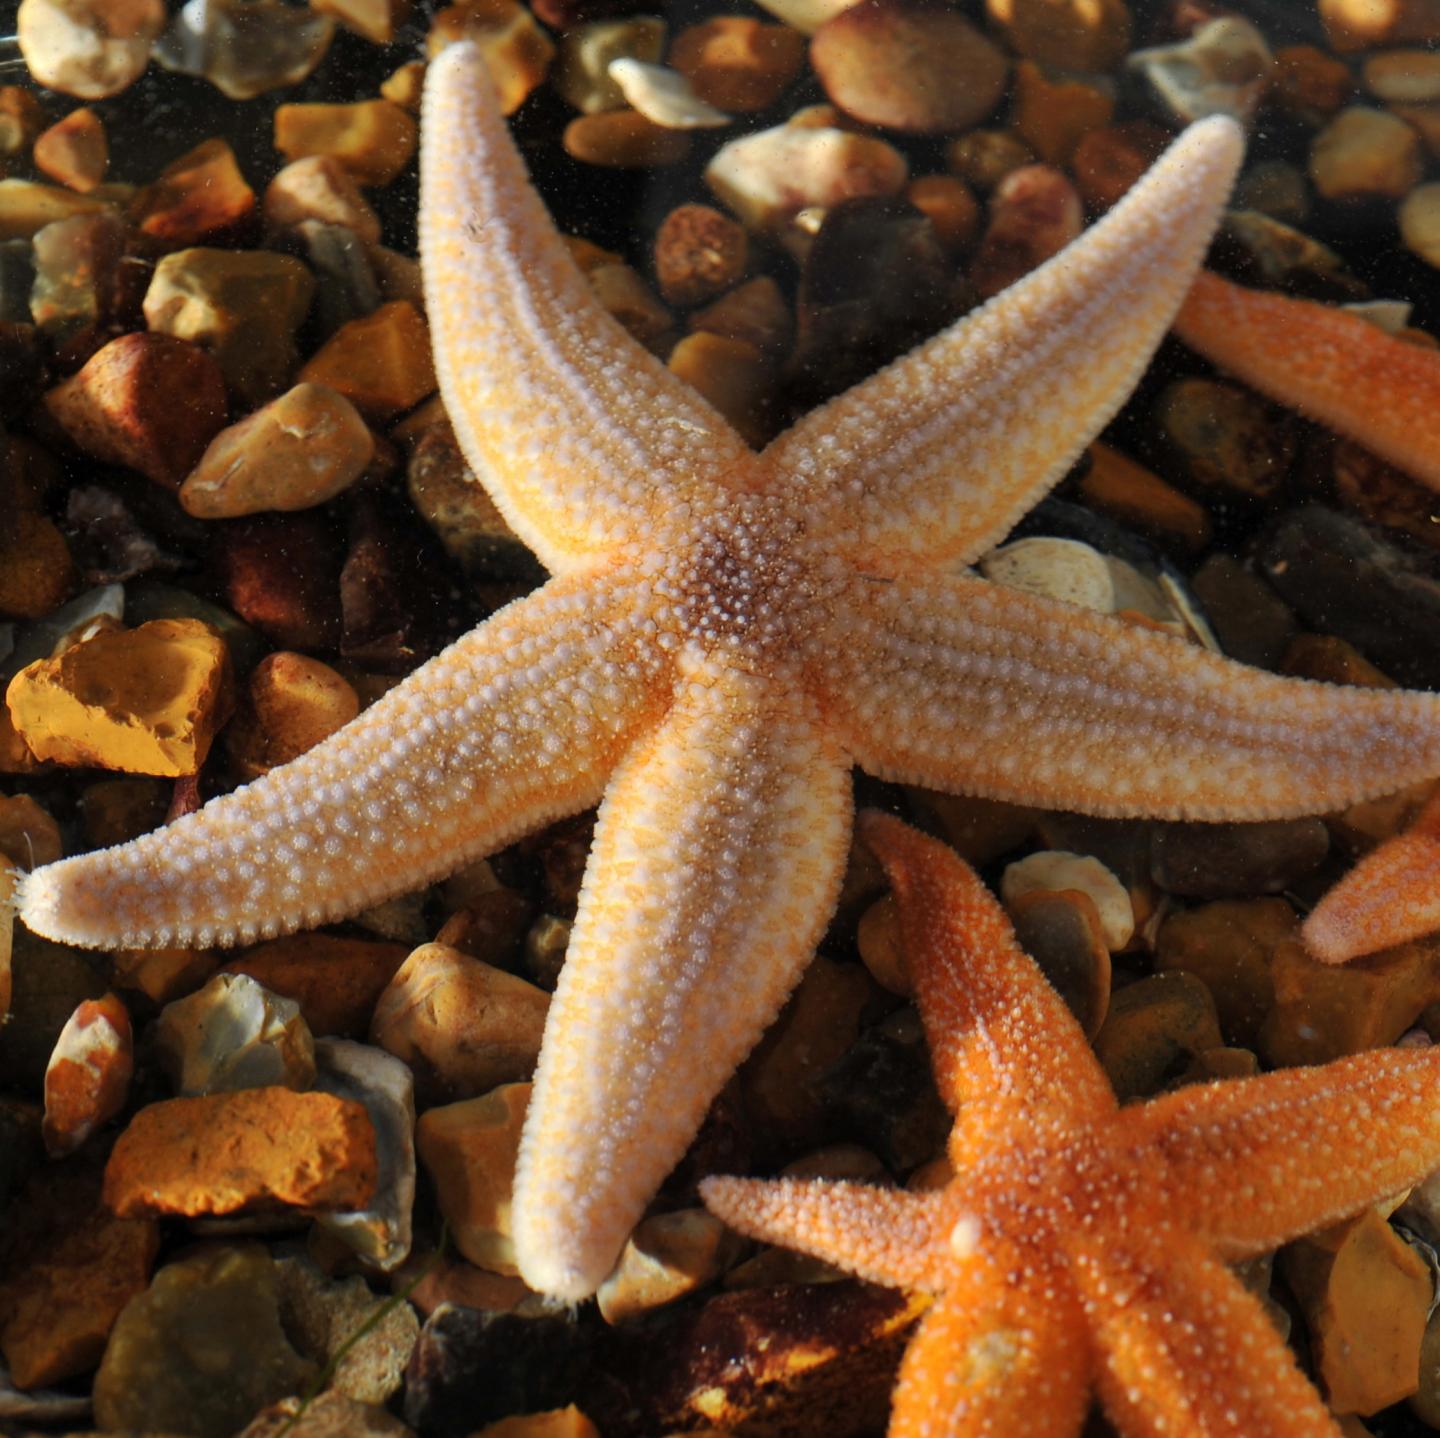 Common European Starfish